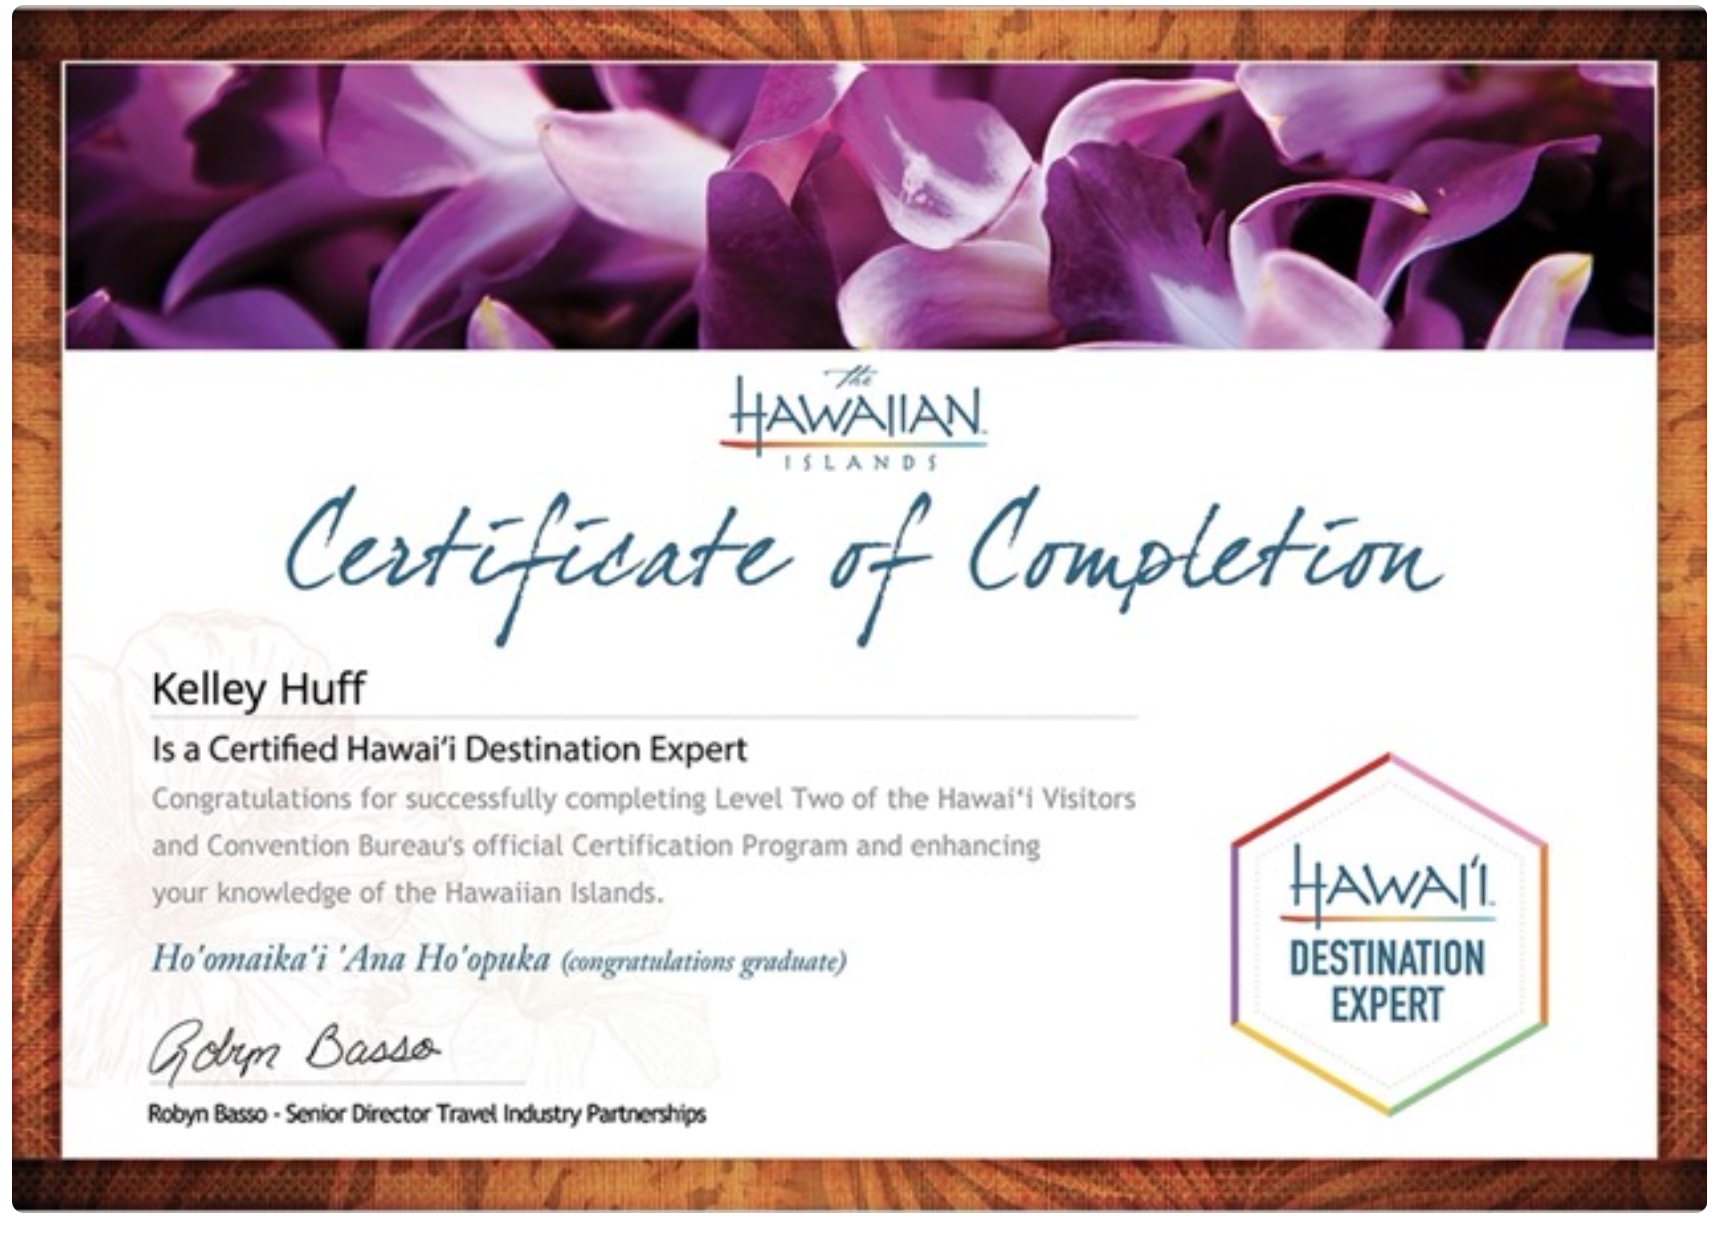 Certified Hawaii Destination Expert